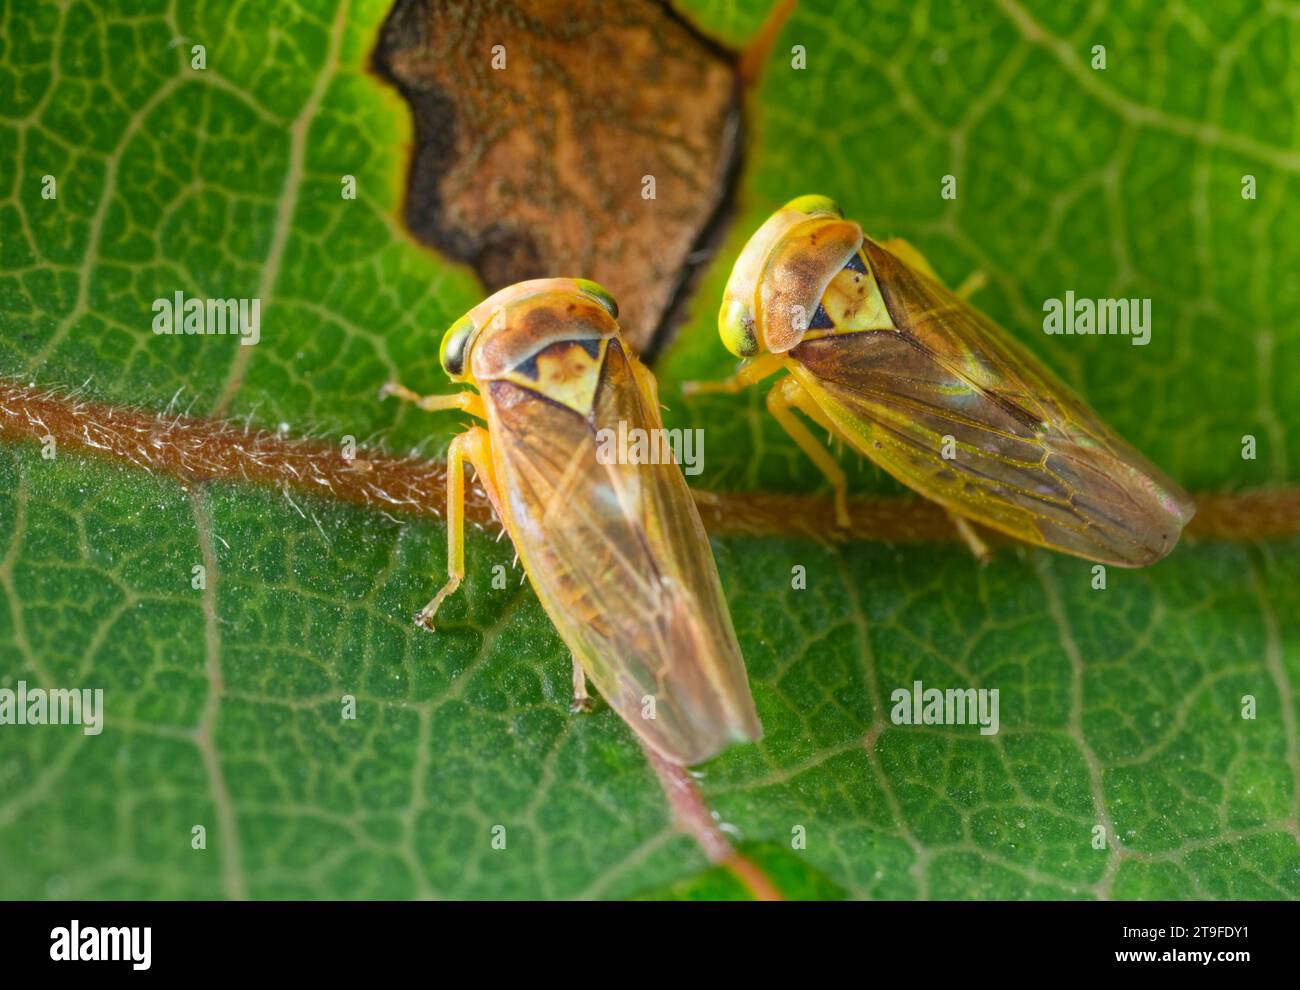 Cicadelles (Popullicerus populi) sur feuille de tremble Banque D'Images